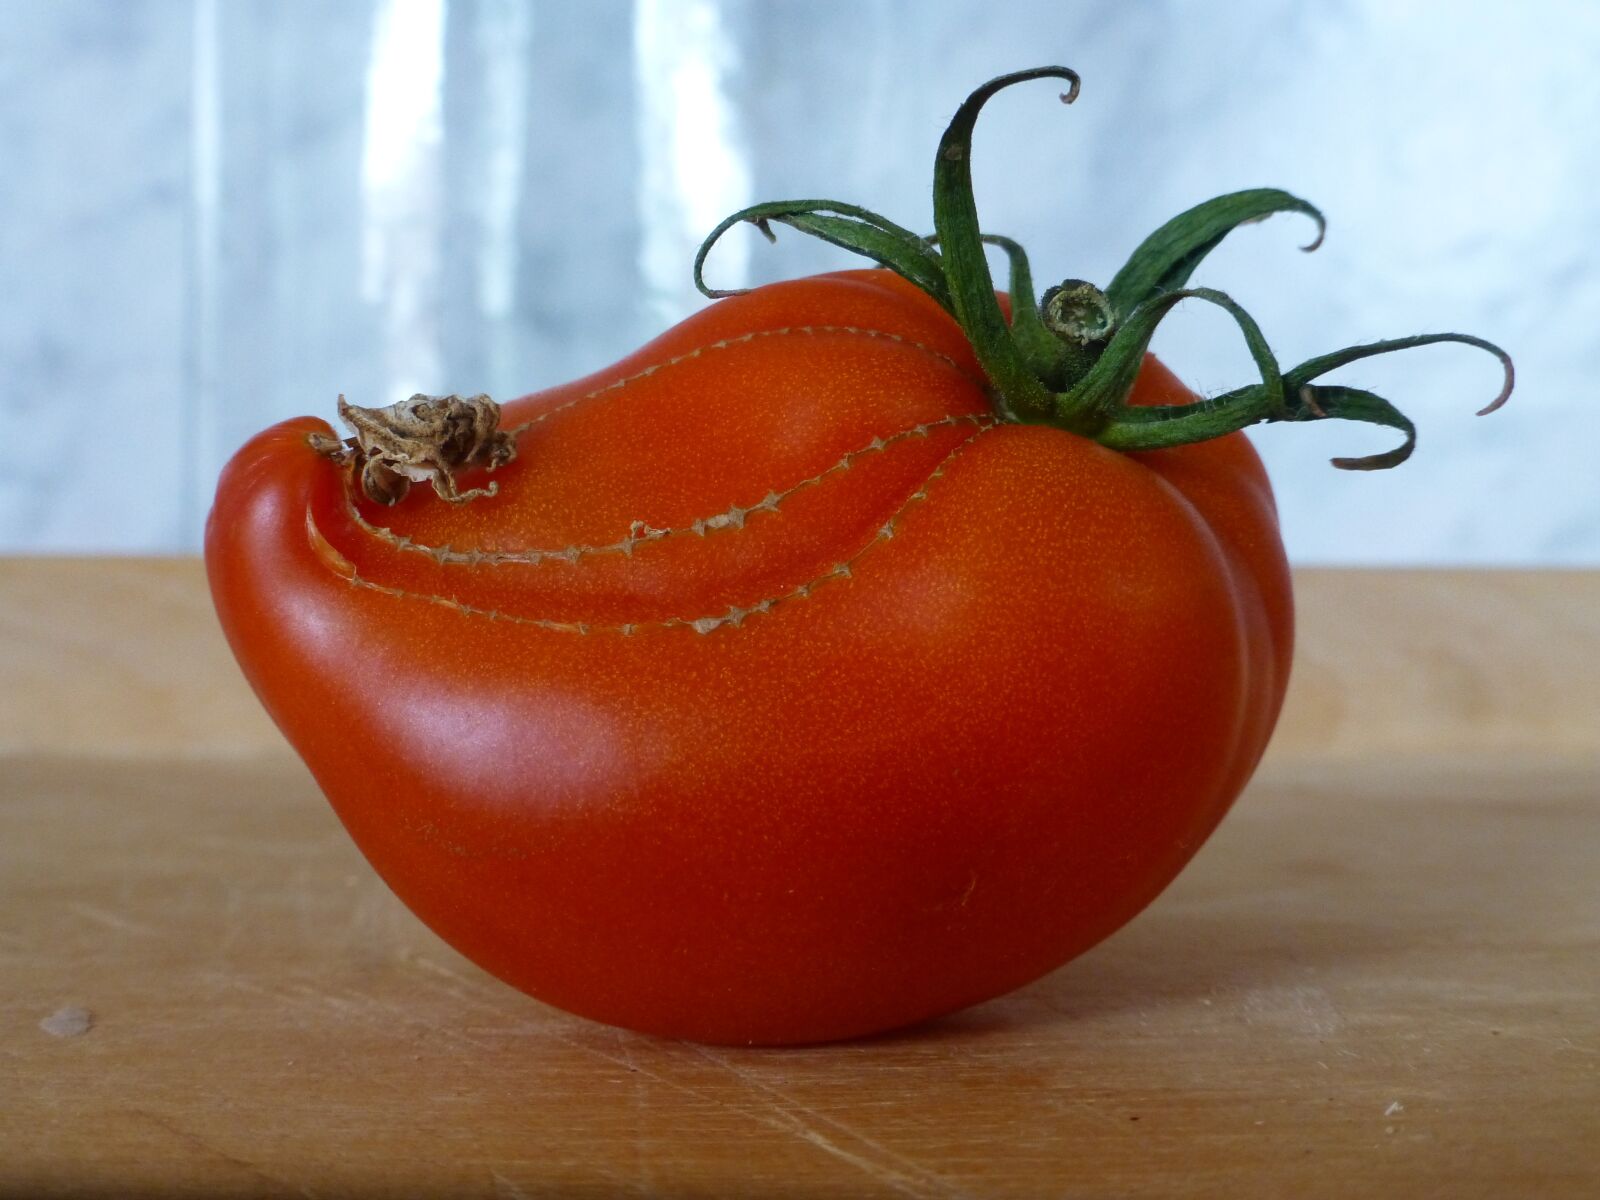 Panasonic DMC-TZ31 sample photo. Tomato, solanum lycopersium, strange photography